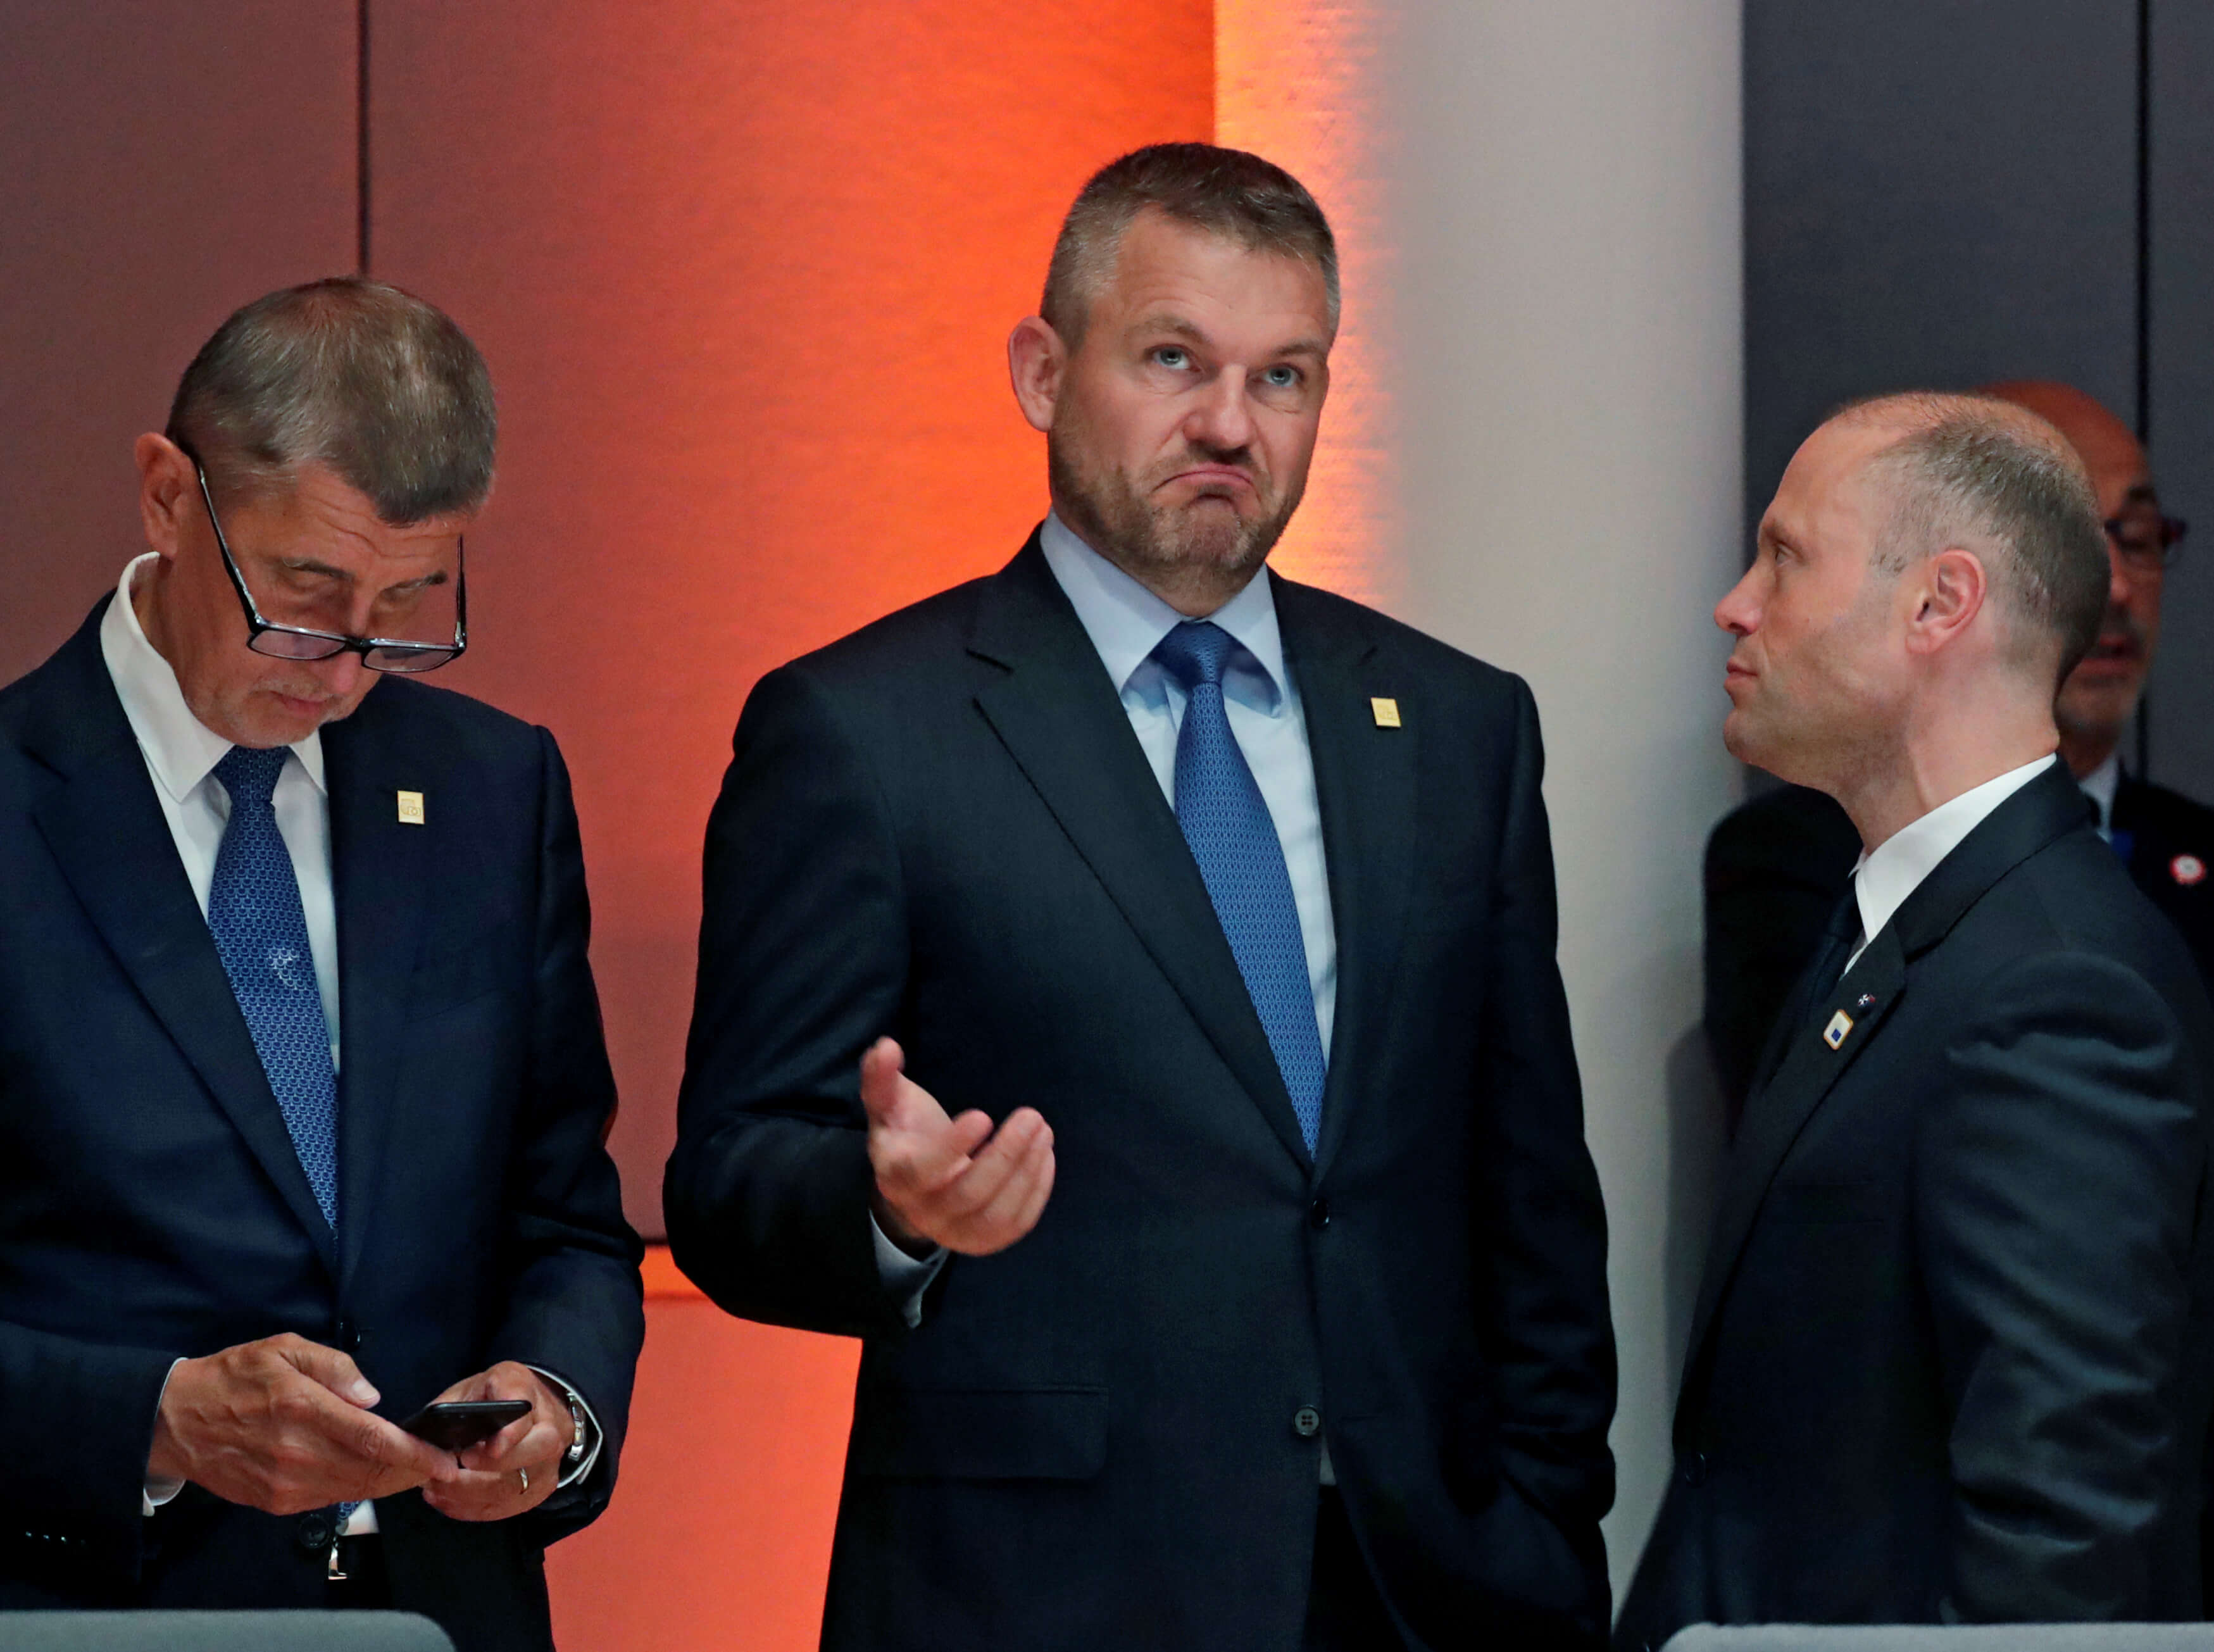 Σύνοδος Κορυφής: Συμβιβασμό προβλέπει ο πρωθυπουργός της Σλοβακίας